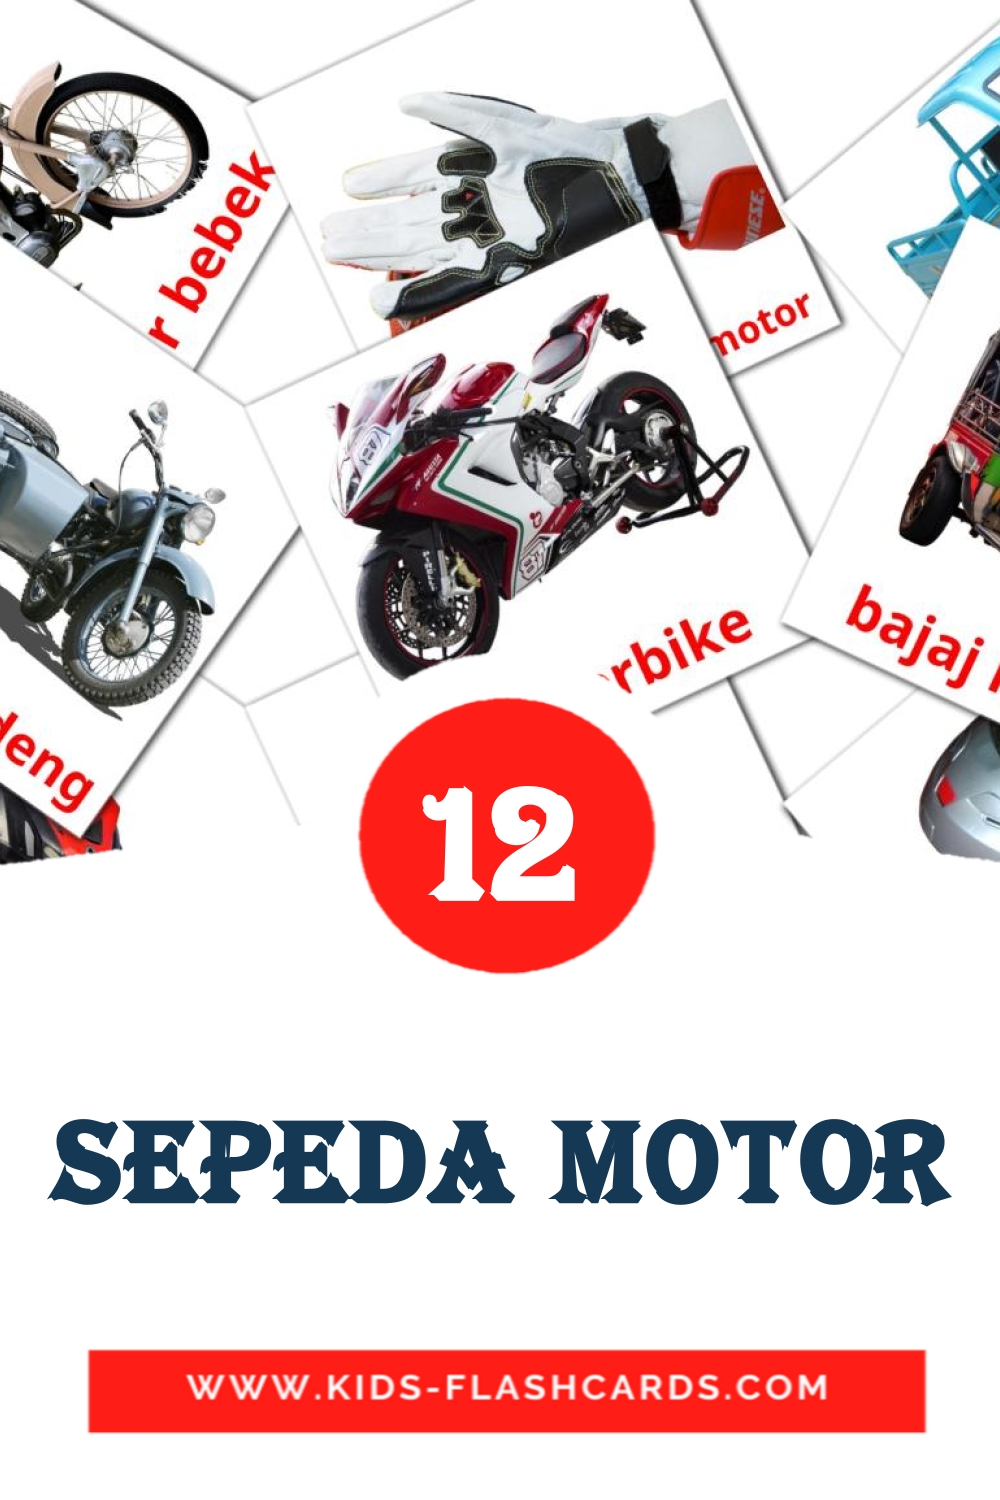 Sepeda Motor на индонезийском для Детского Сада (14 карточек)